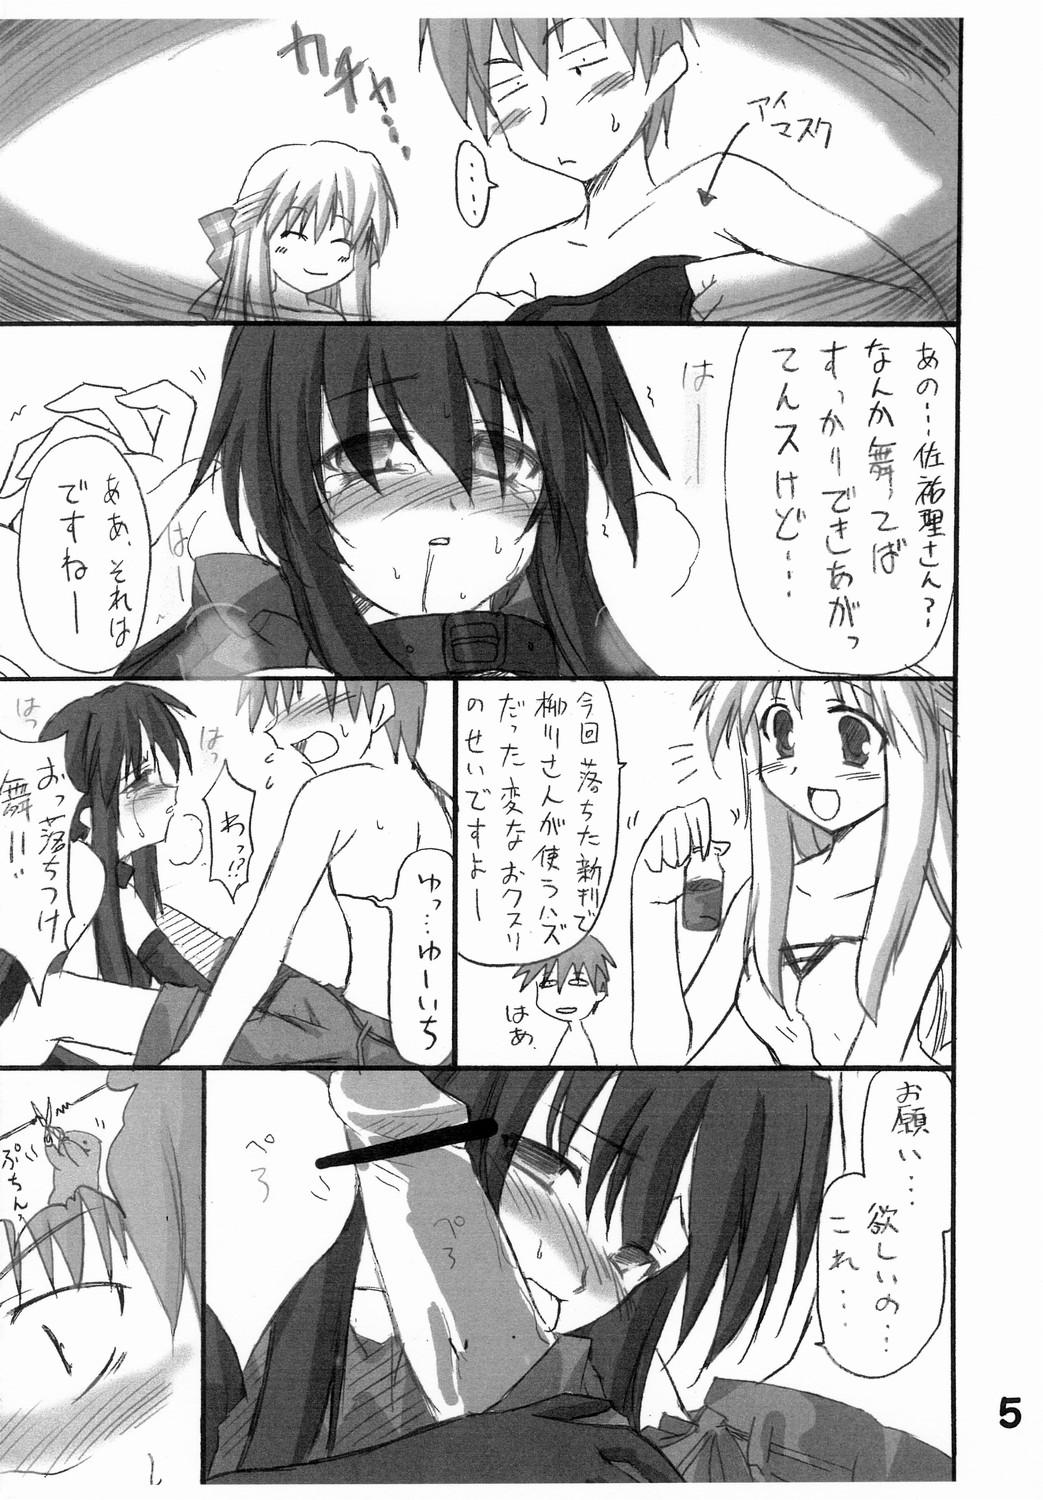 Retro Haru na no ni - Manatsu no Usagi - Kanon Cam Sex - Page 6